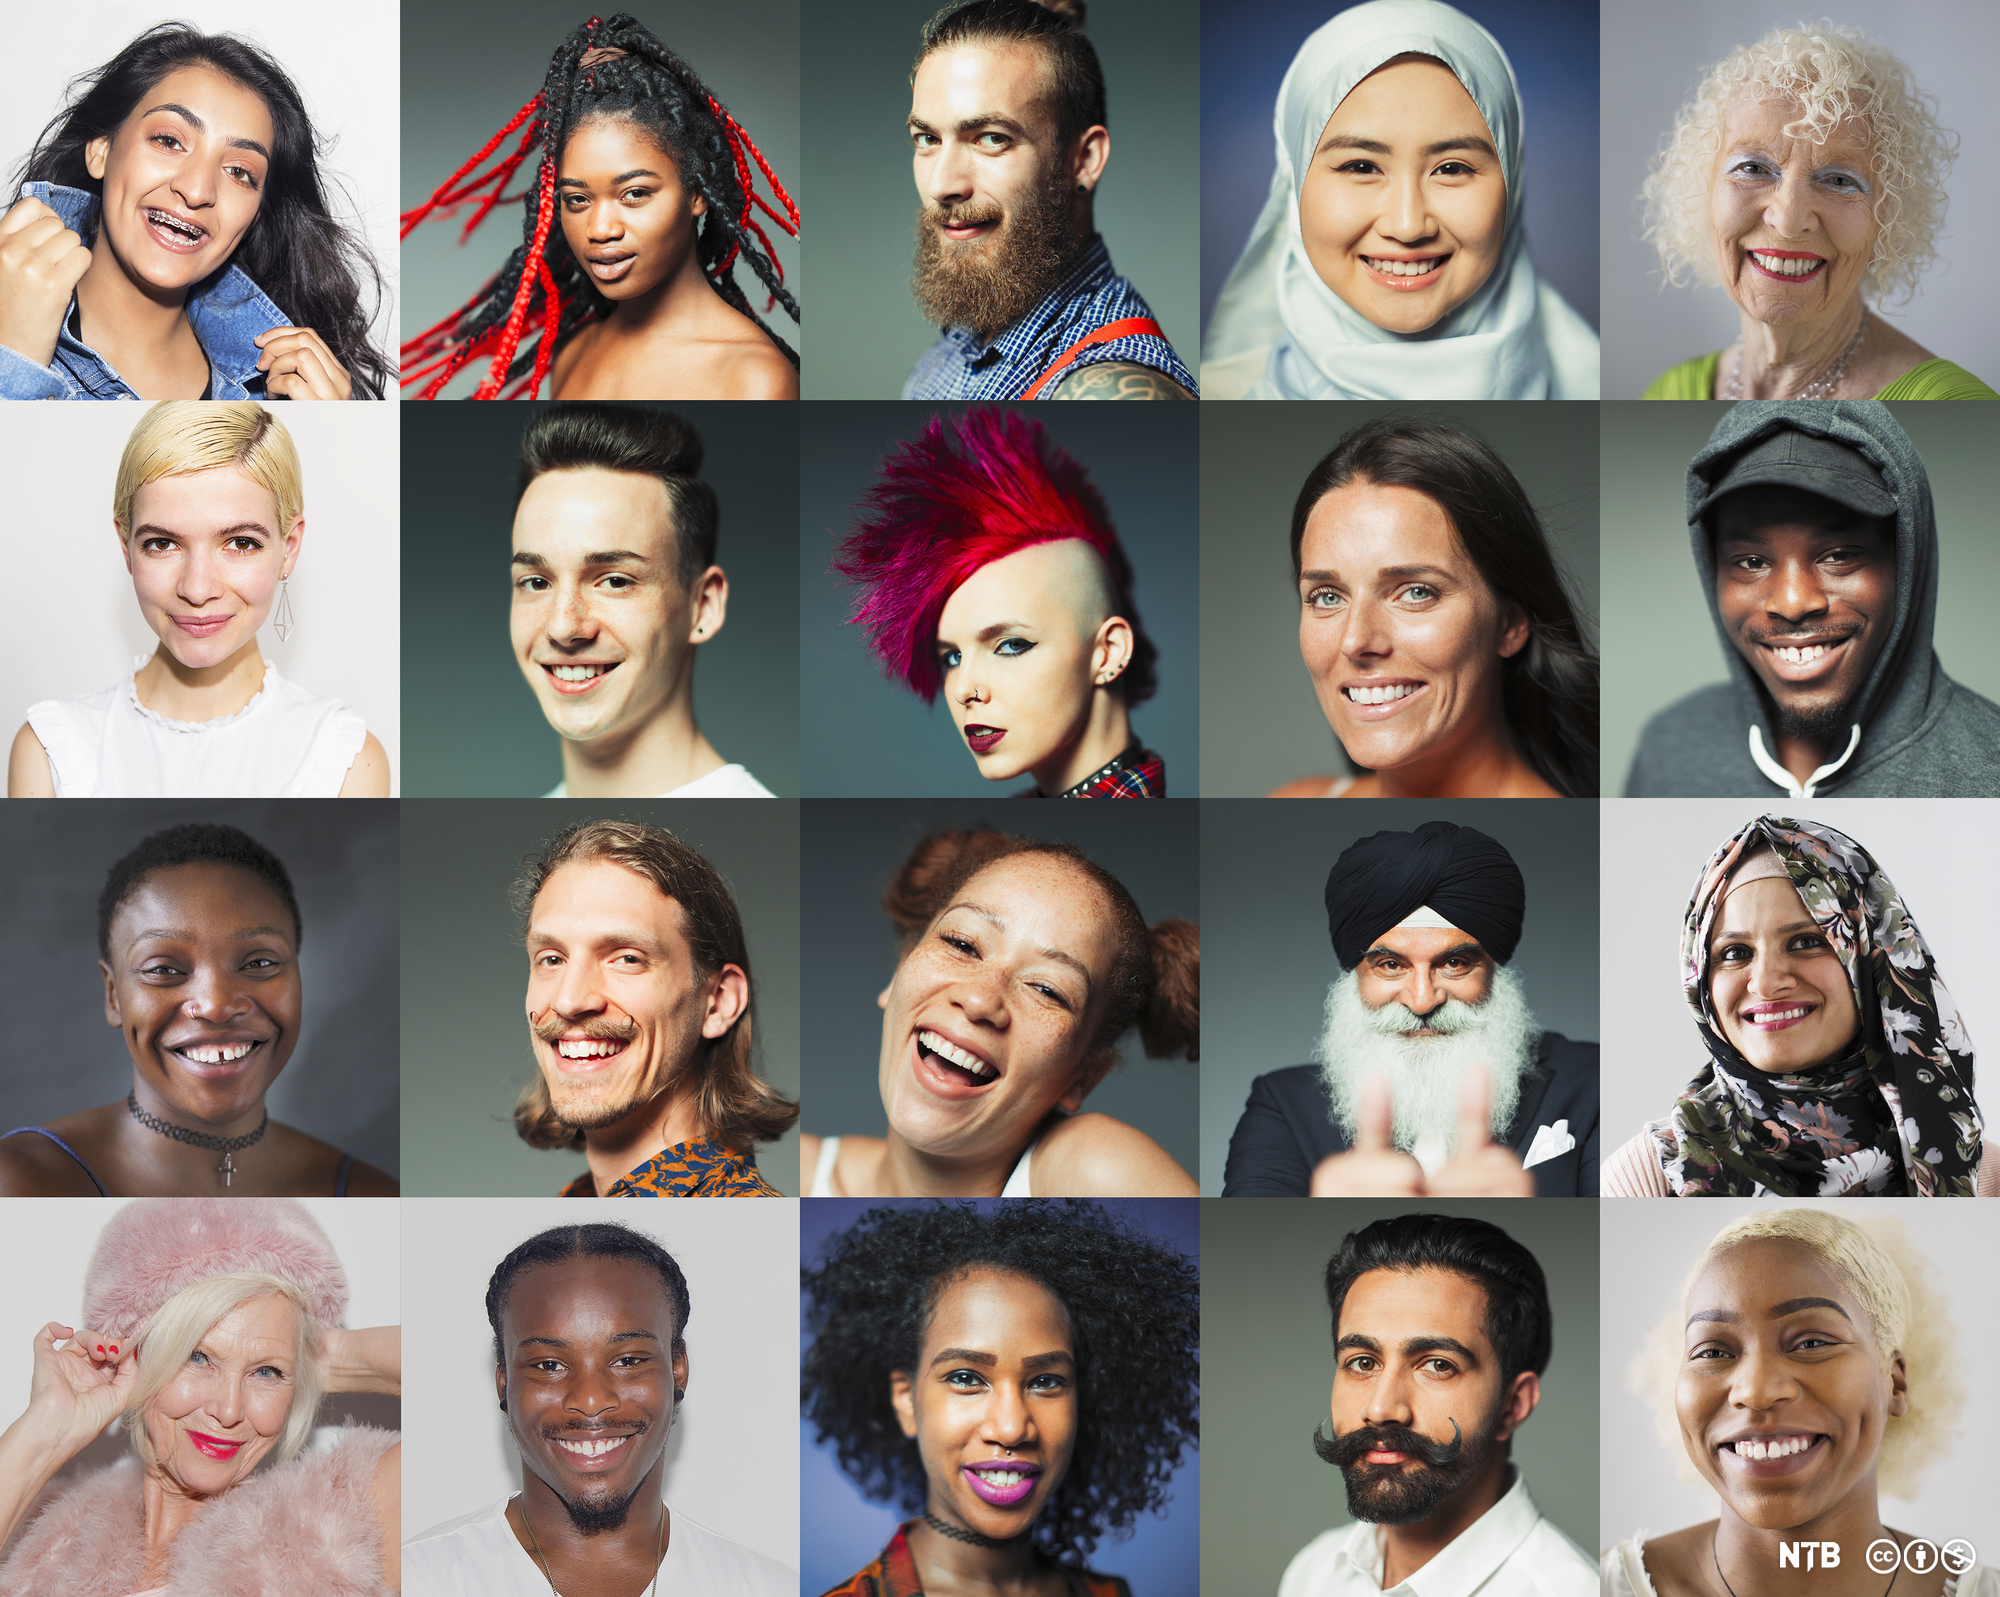 Portretter av mange forskjellige mennesker med blant annet ulik hudfarge, hårfrisyre, klesdrakt og ansiktsuttrykk. Foto.